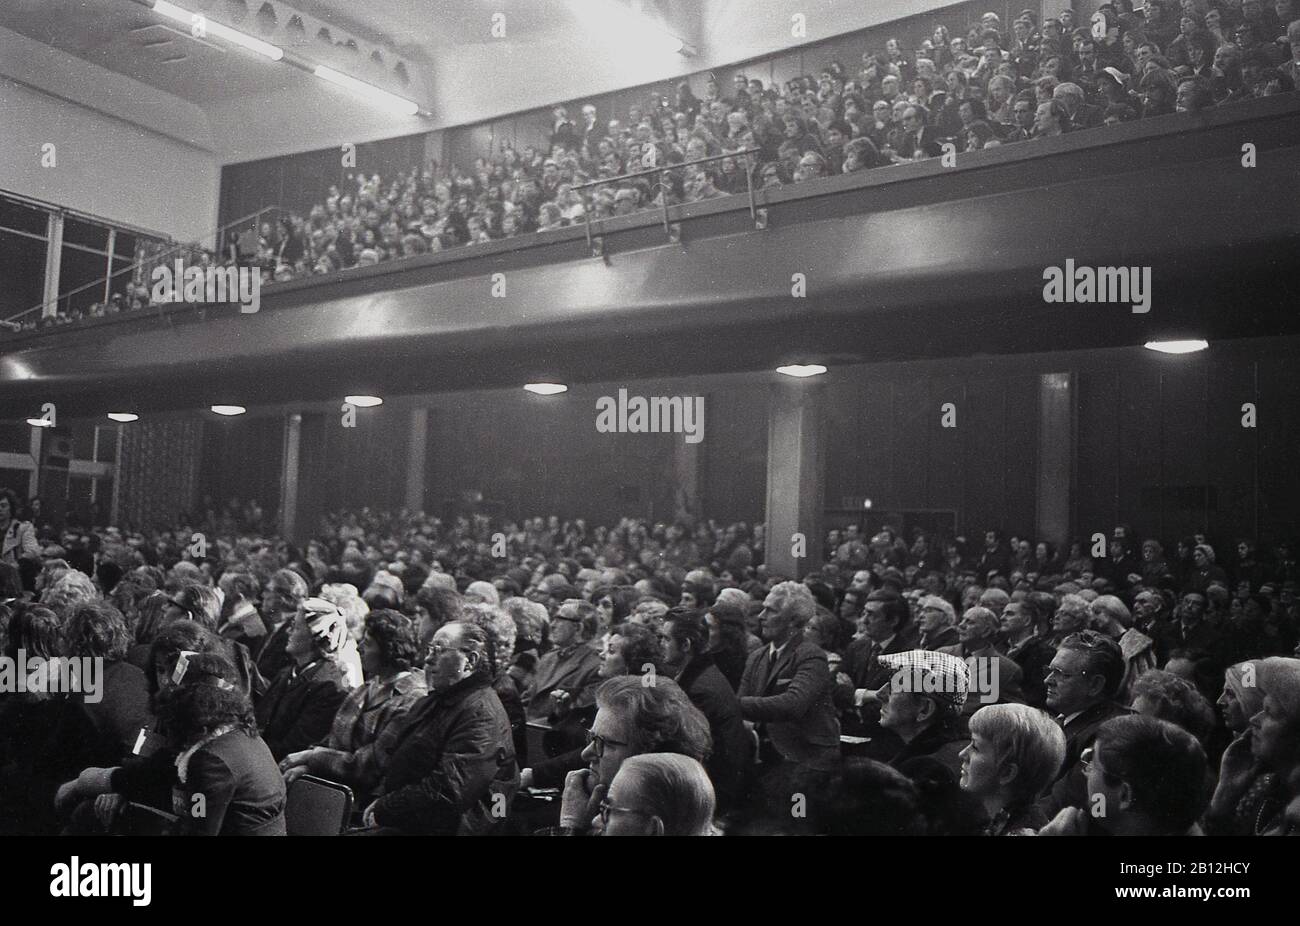 Années 1960, historique, un public de personnes assis dans un auditorium à deux niveaux écoutant un discours lors d'une réunion politique, au sud de Londres, Angleterre, Royaume-Uni. Banque D'Images